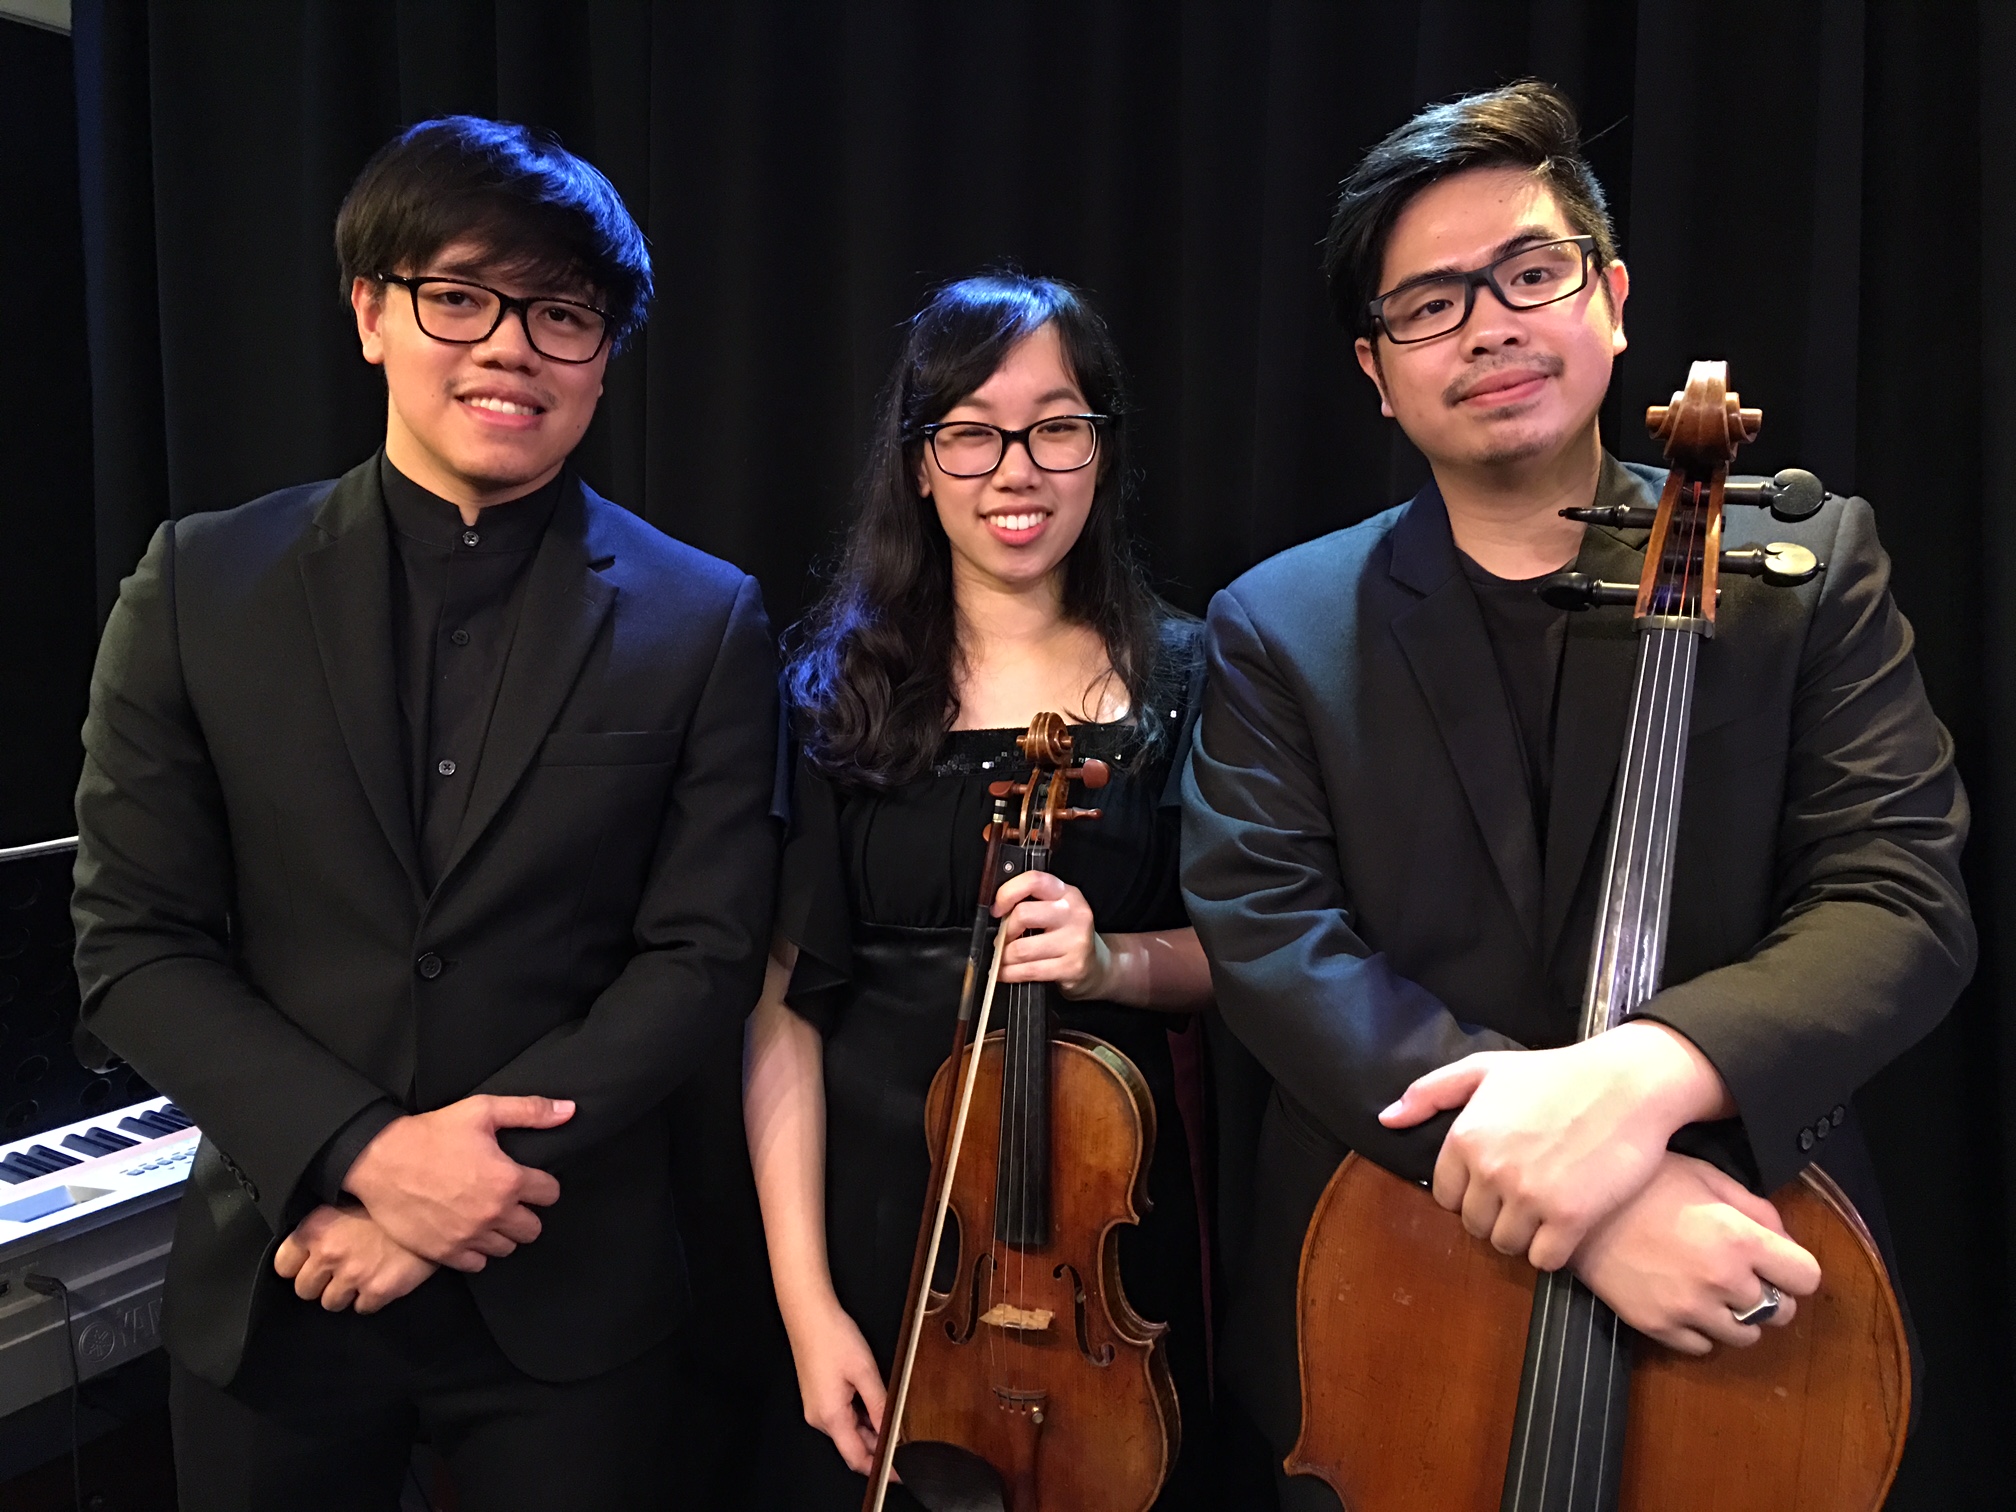 The Brille Trio (l-r): Yossral Songkiatkul, Varissara Tanakom and Vannophat Kaploykeo. (Photo/Ben Hansen)